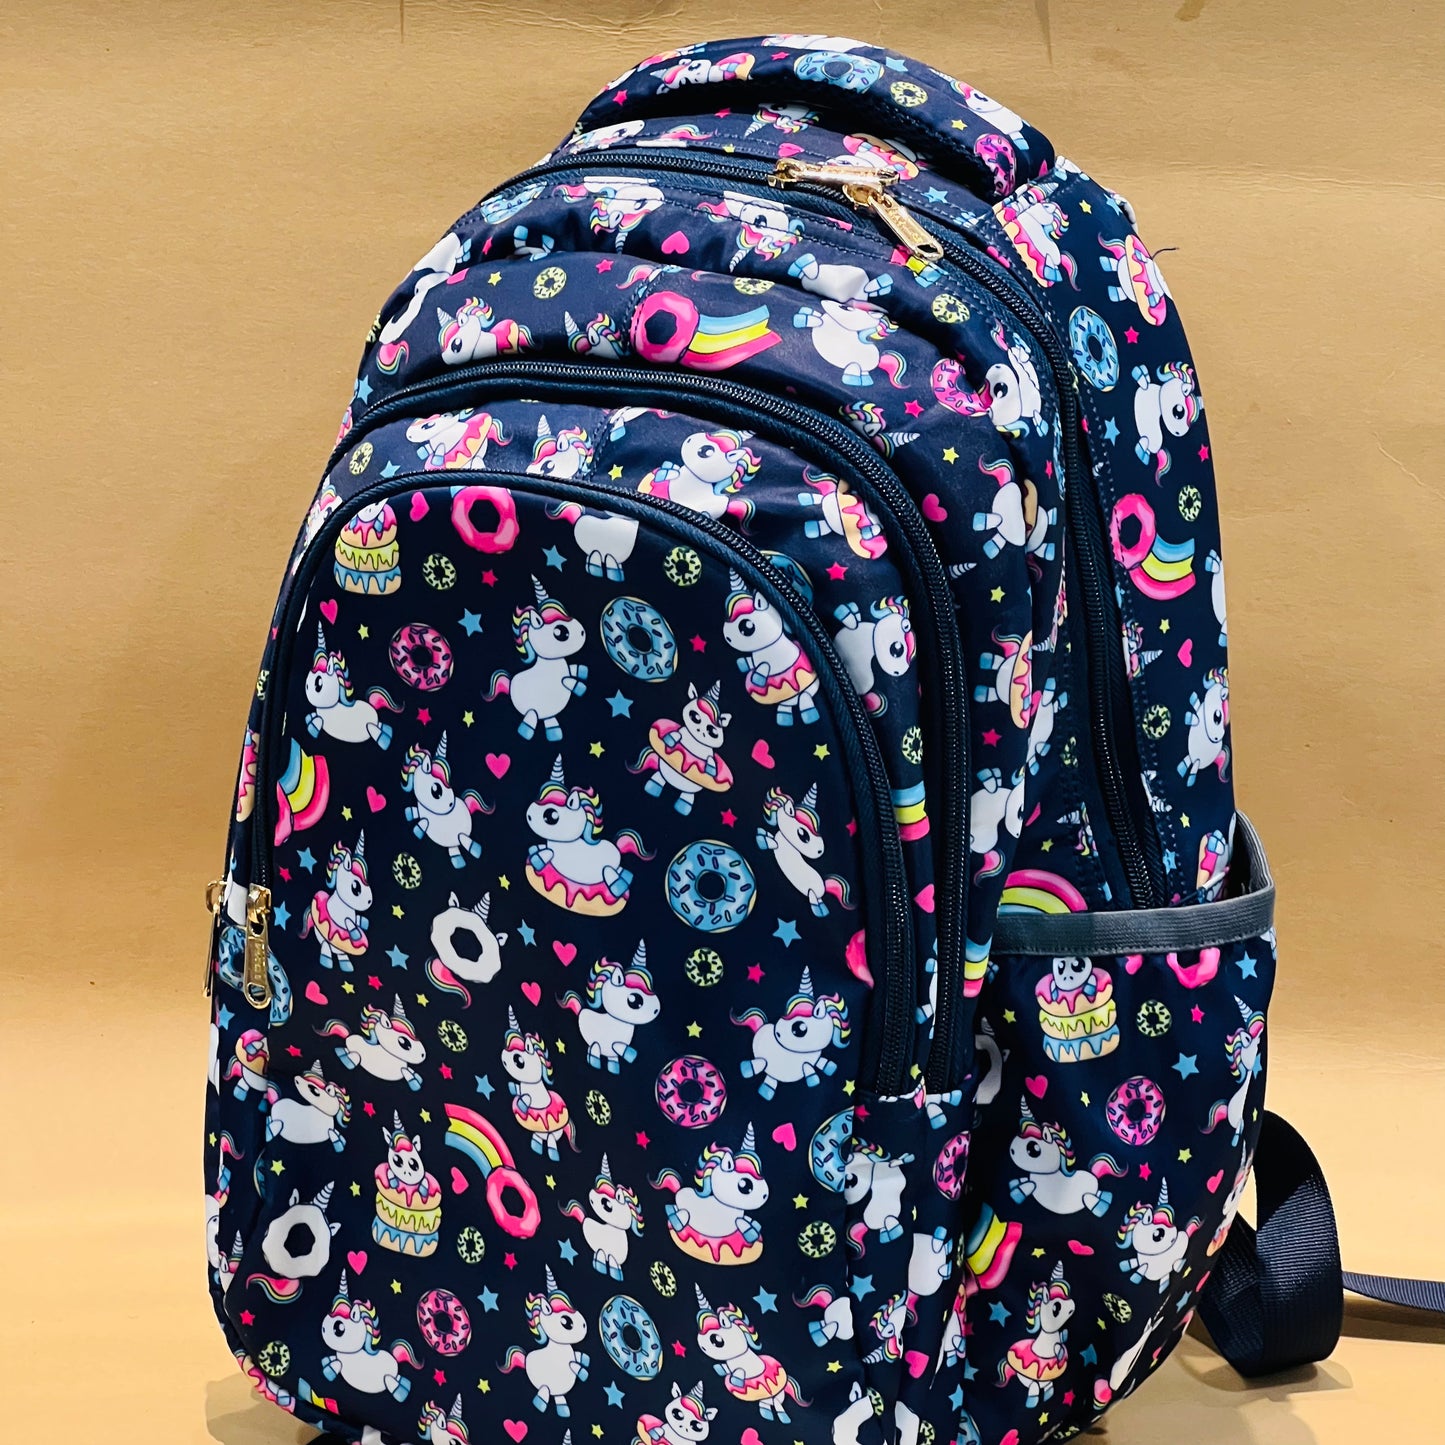 14” Premium School Bags